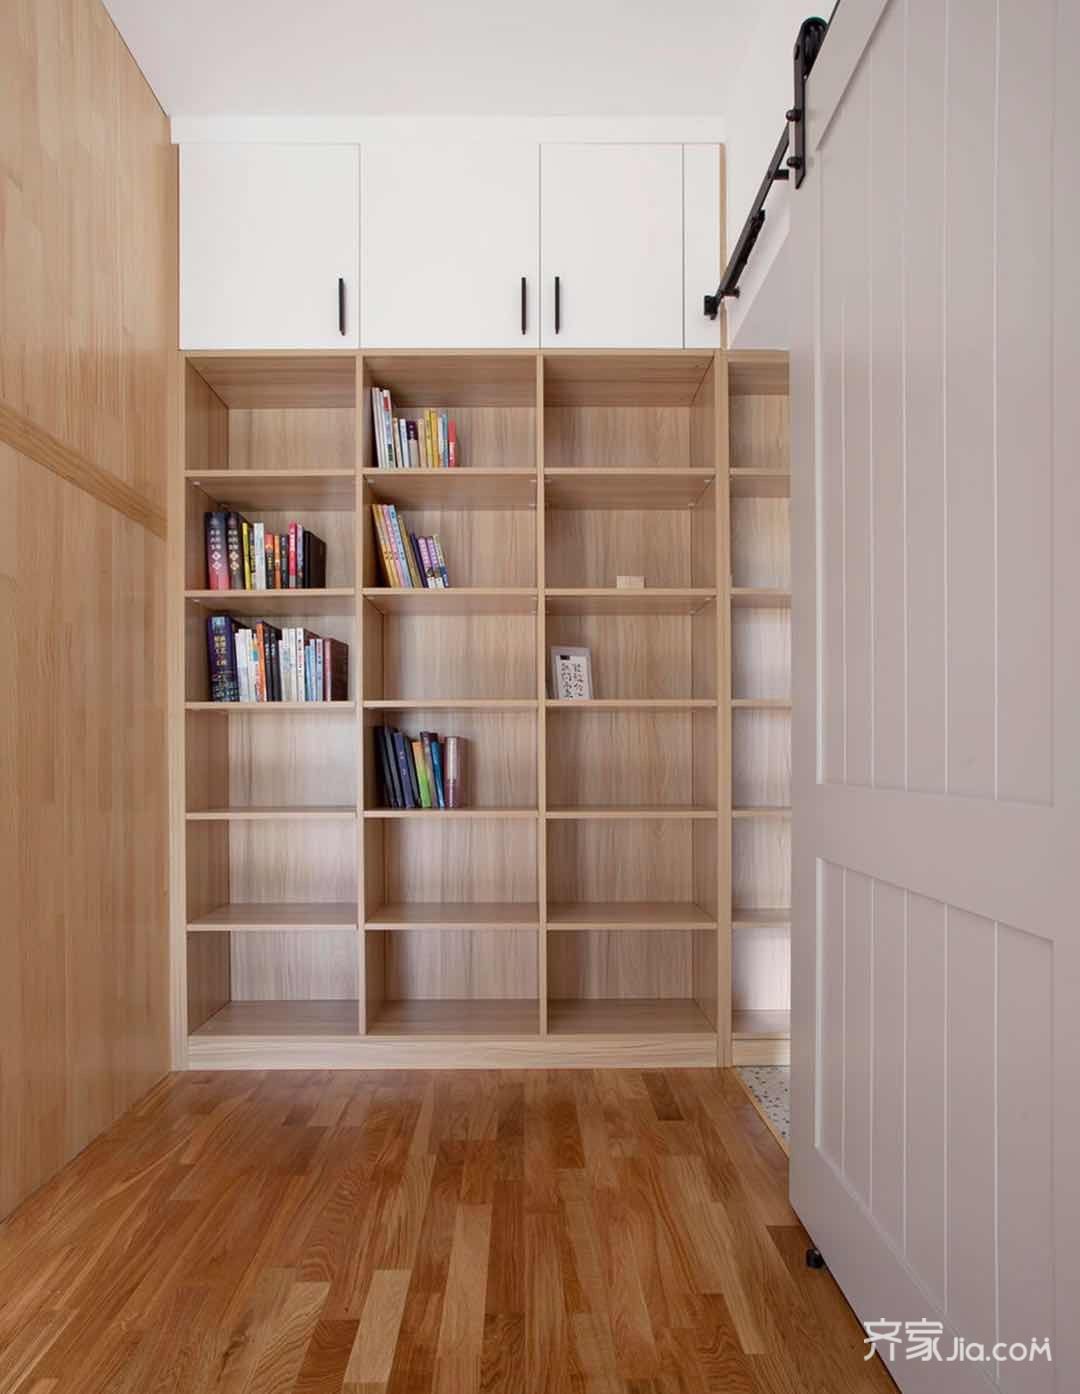 书架的设计与门洞齐高,视觉上也不会有压抑感,然后柜门通顶用来储物